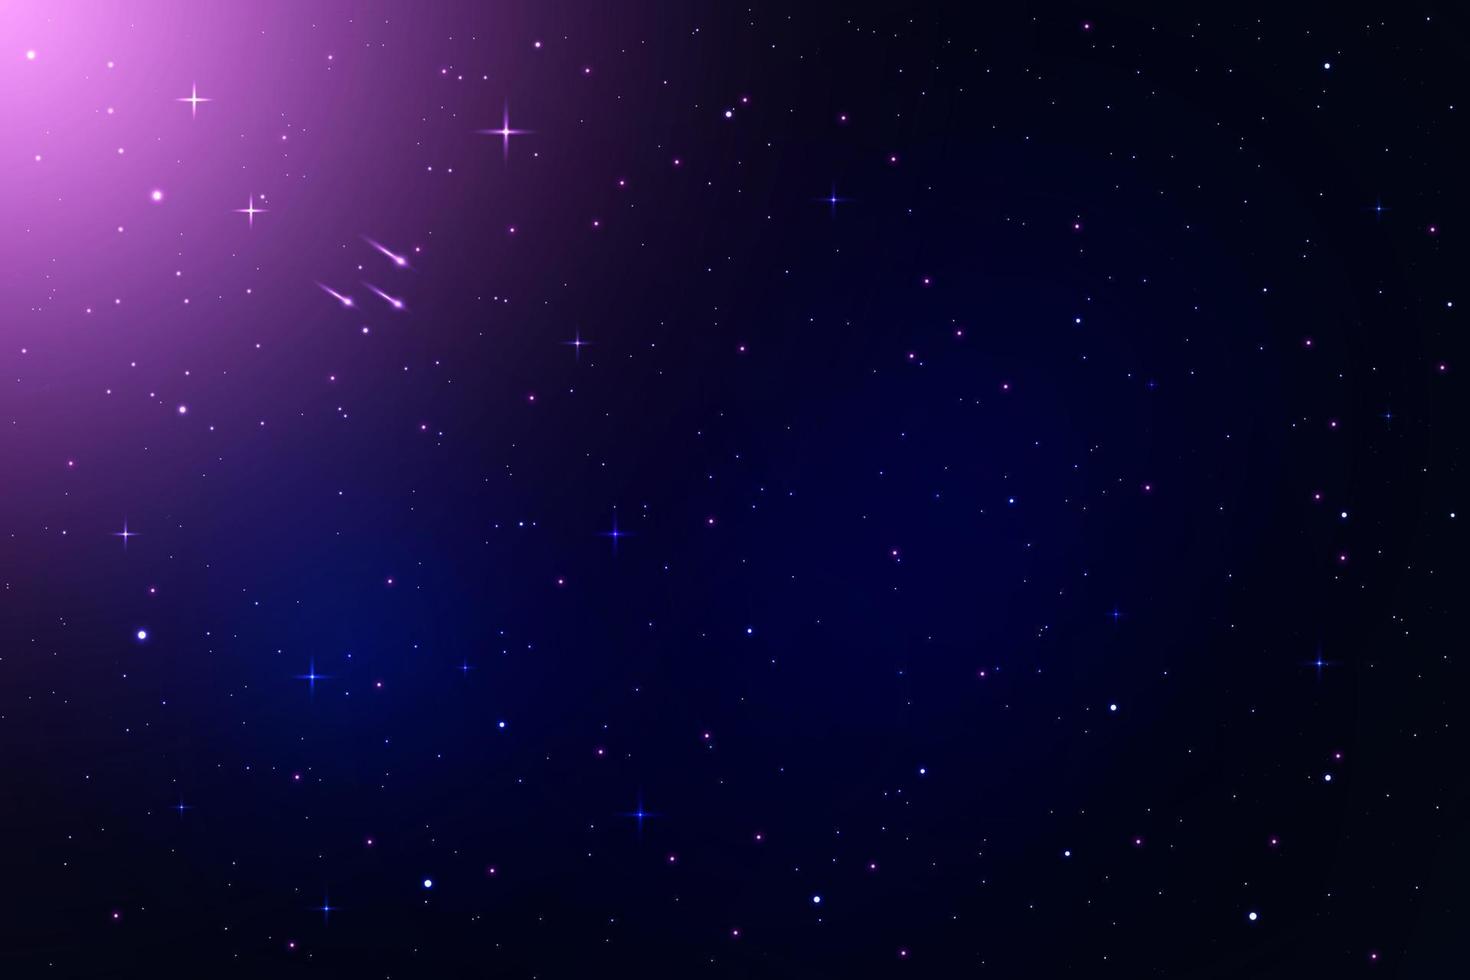 fond de galaxie avec étoile filante, illustration de galaxie spatiale vectorielle vecteur